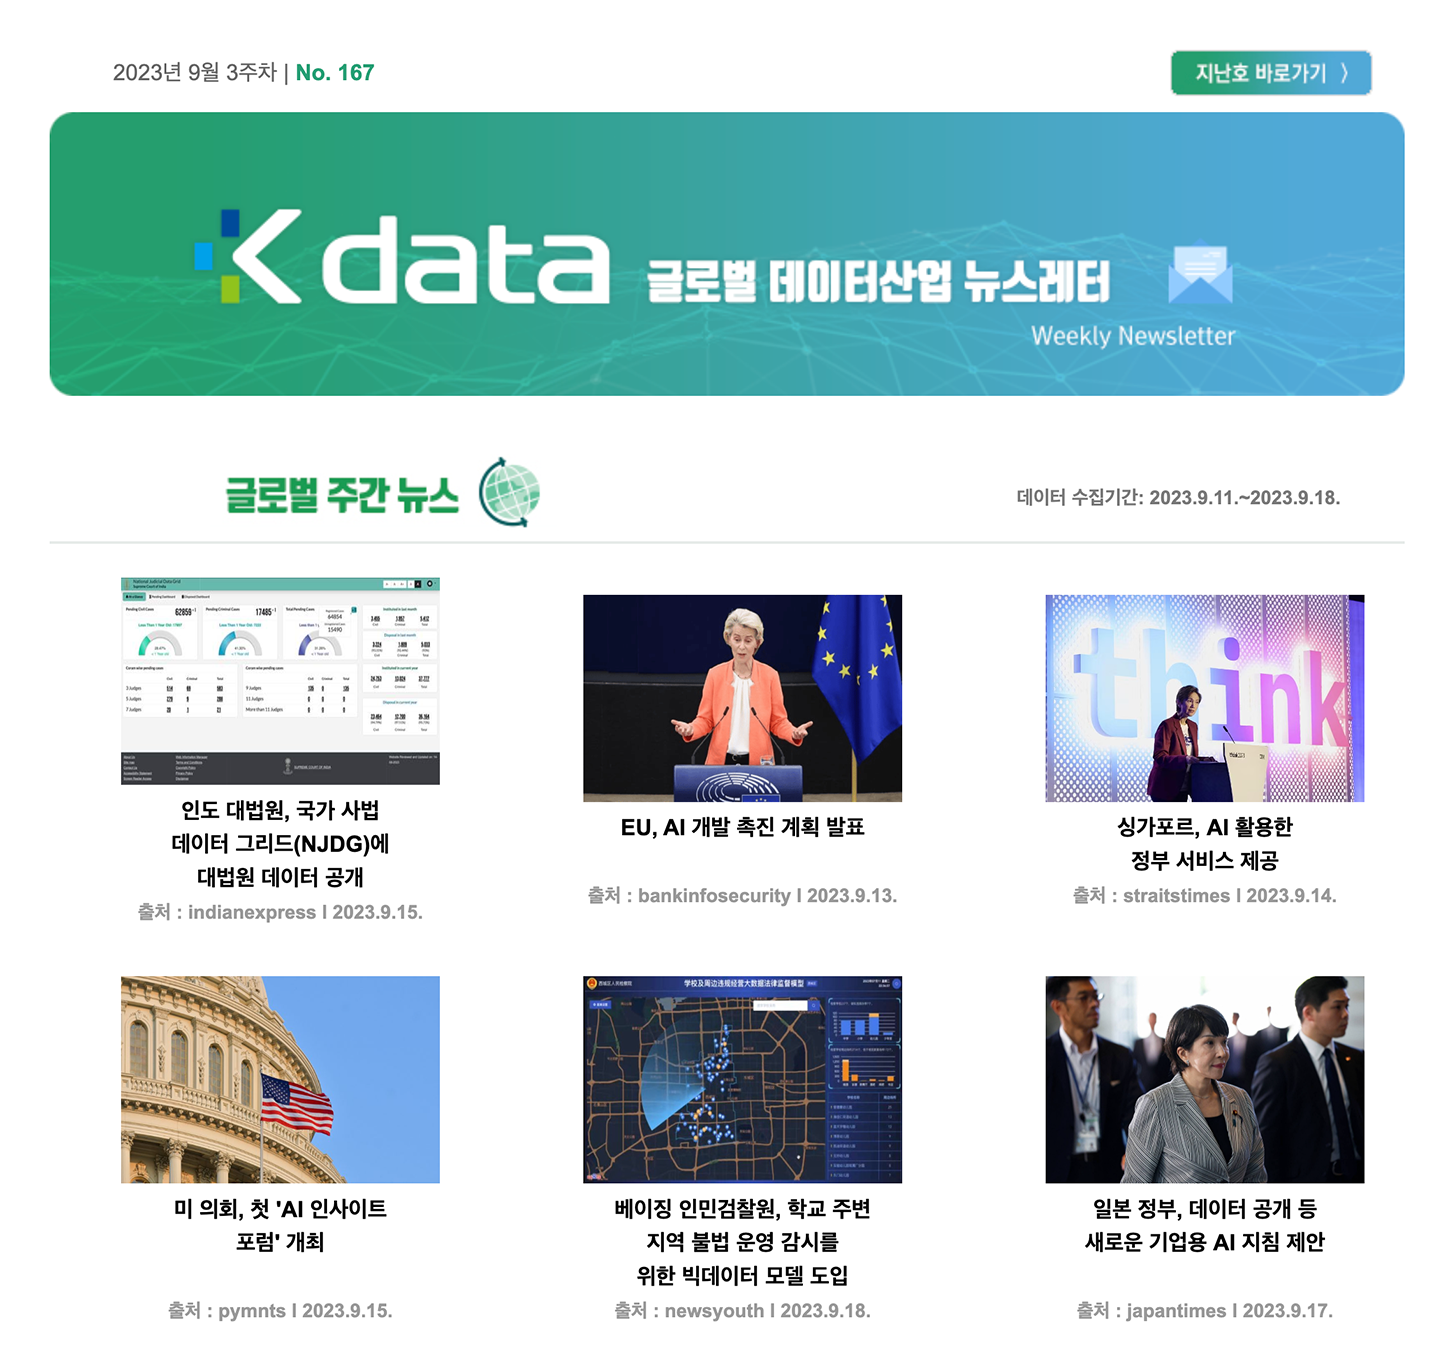 2023년 9월 3주차 No.167 Kdata 글로벌 데이터산업 뉴스레터